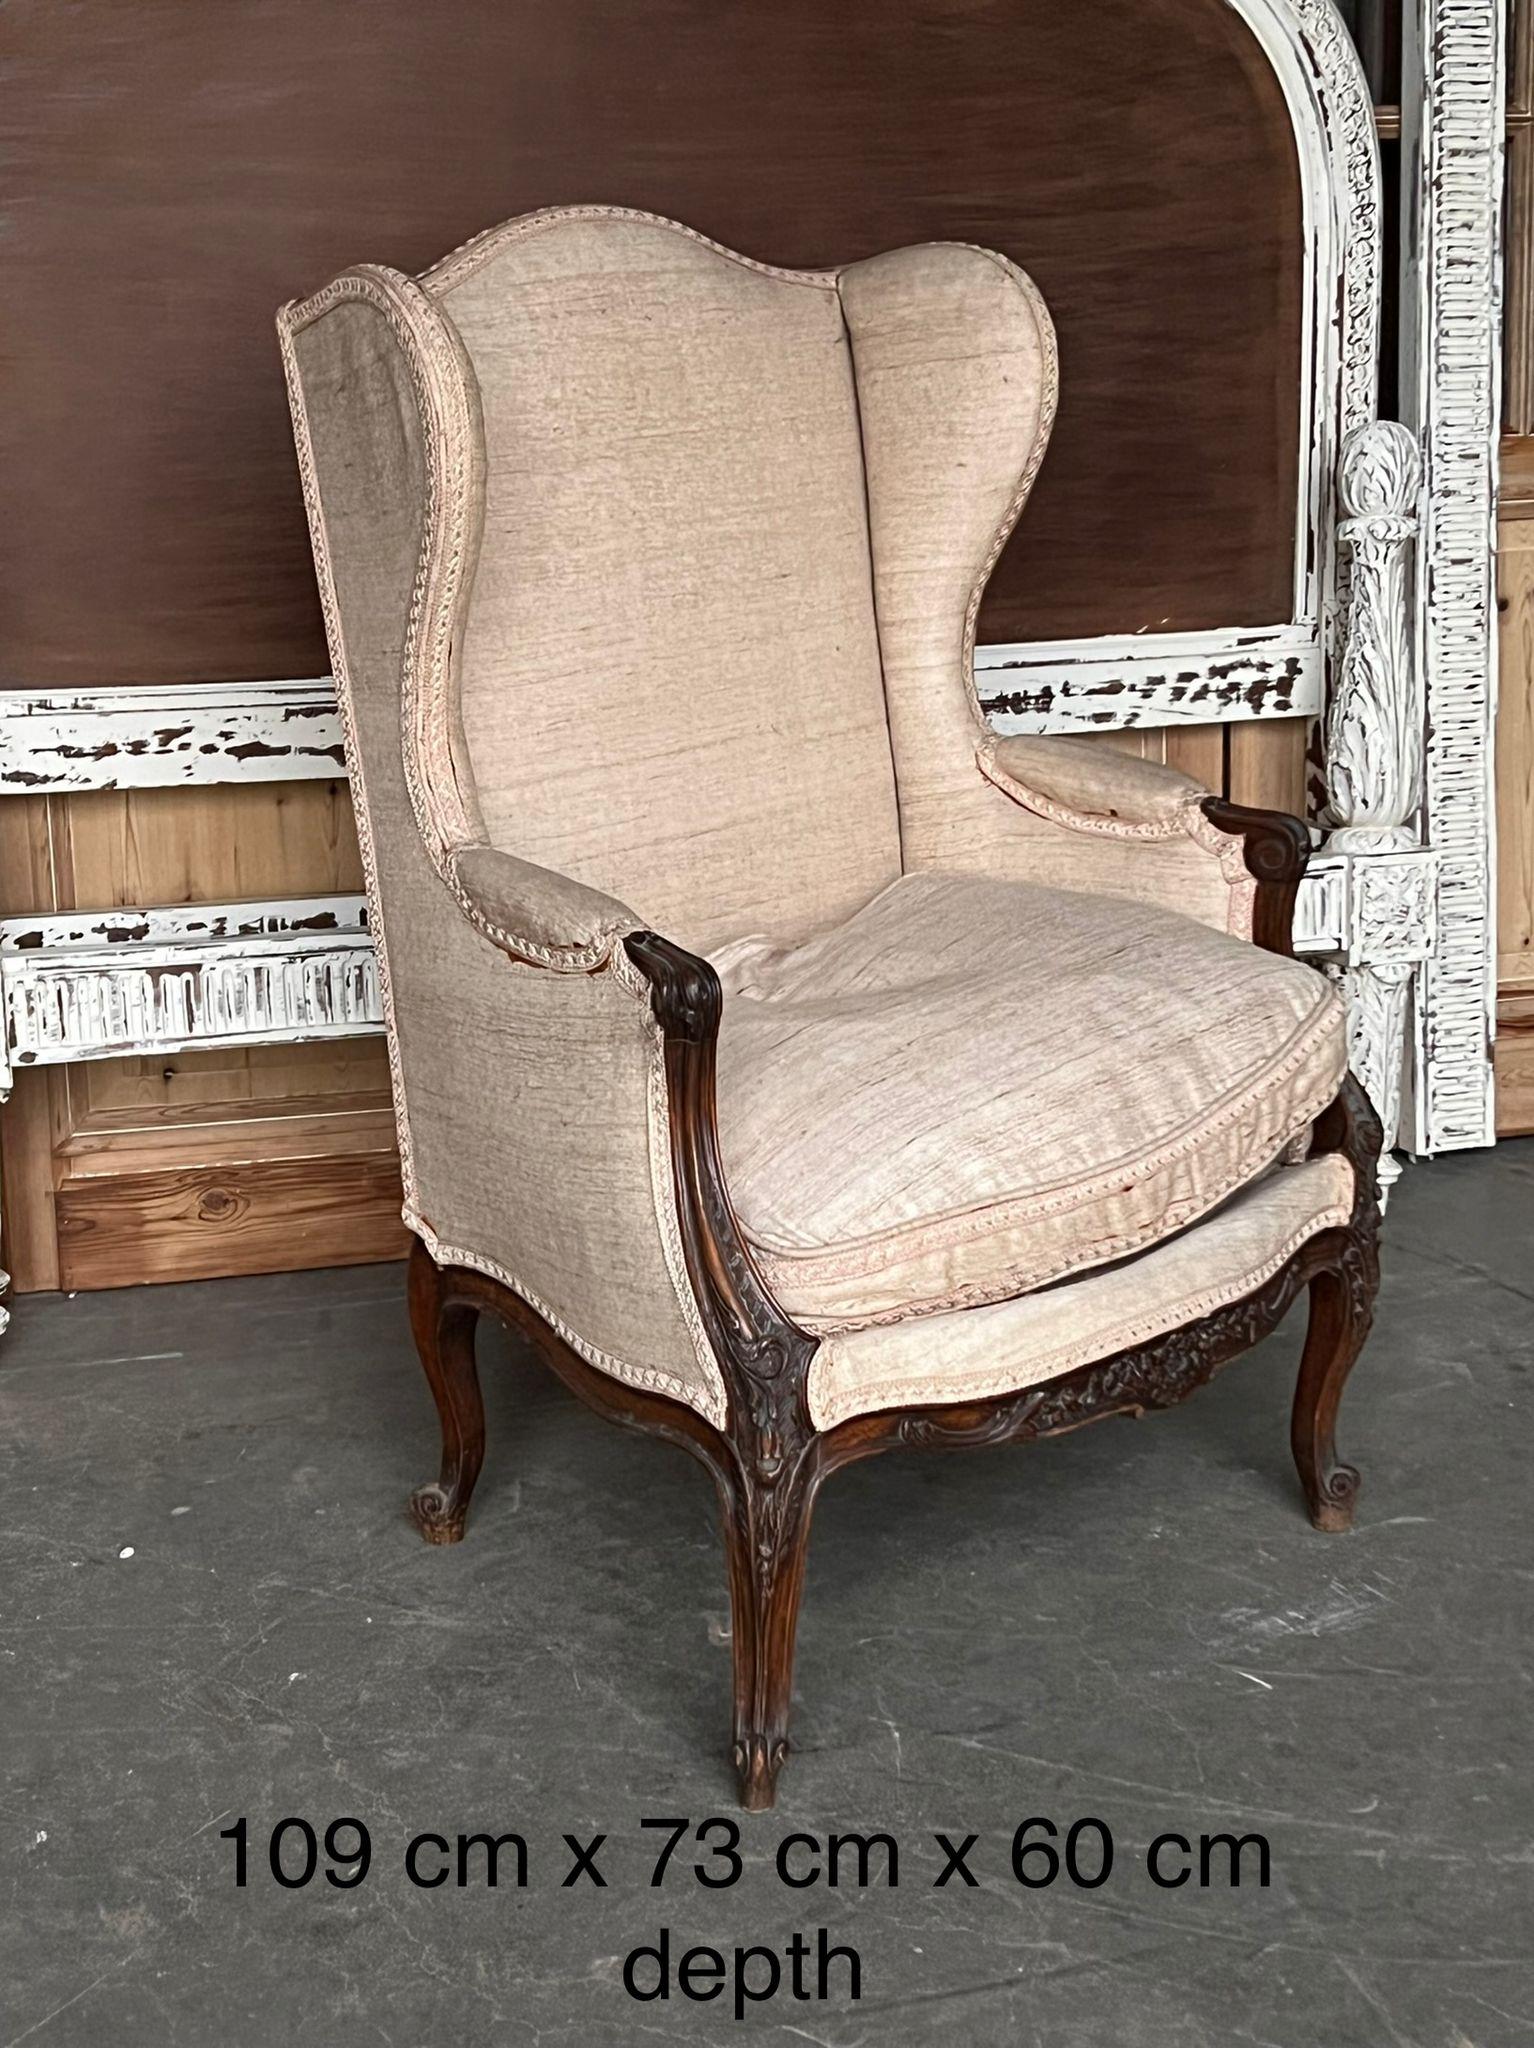 Un fauteuil à accoudoirs français du XIXe siècle extrêmement confortable et généreux. Le cadre en noyer est magnifiquement sculpté et est solide et robuste. La tapisserie intérieure est en bon état, mais le tissu extérieur est prêt à être remplacé